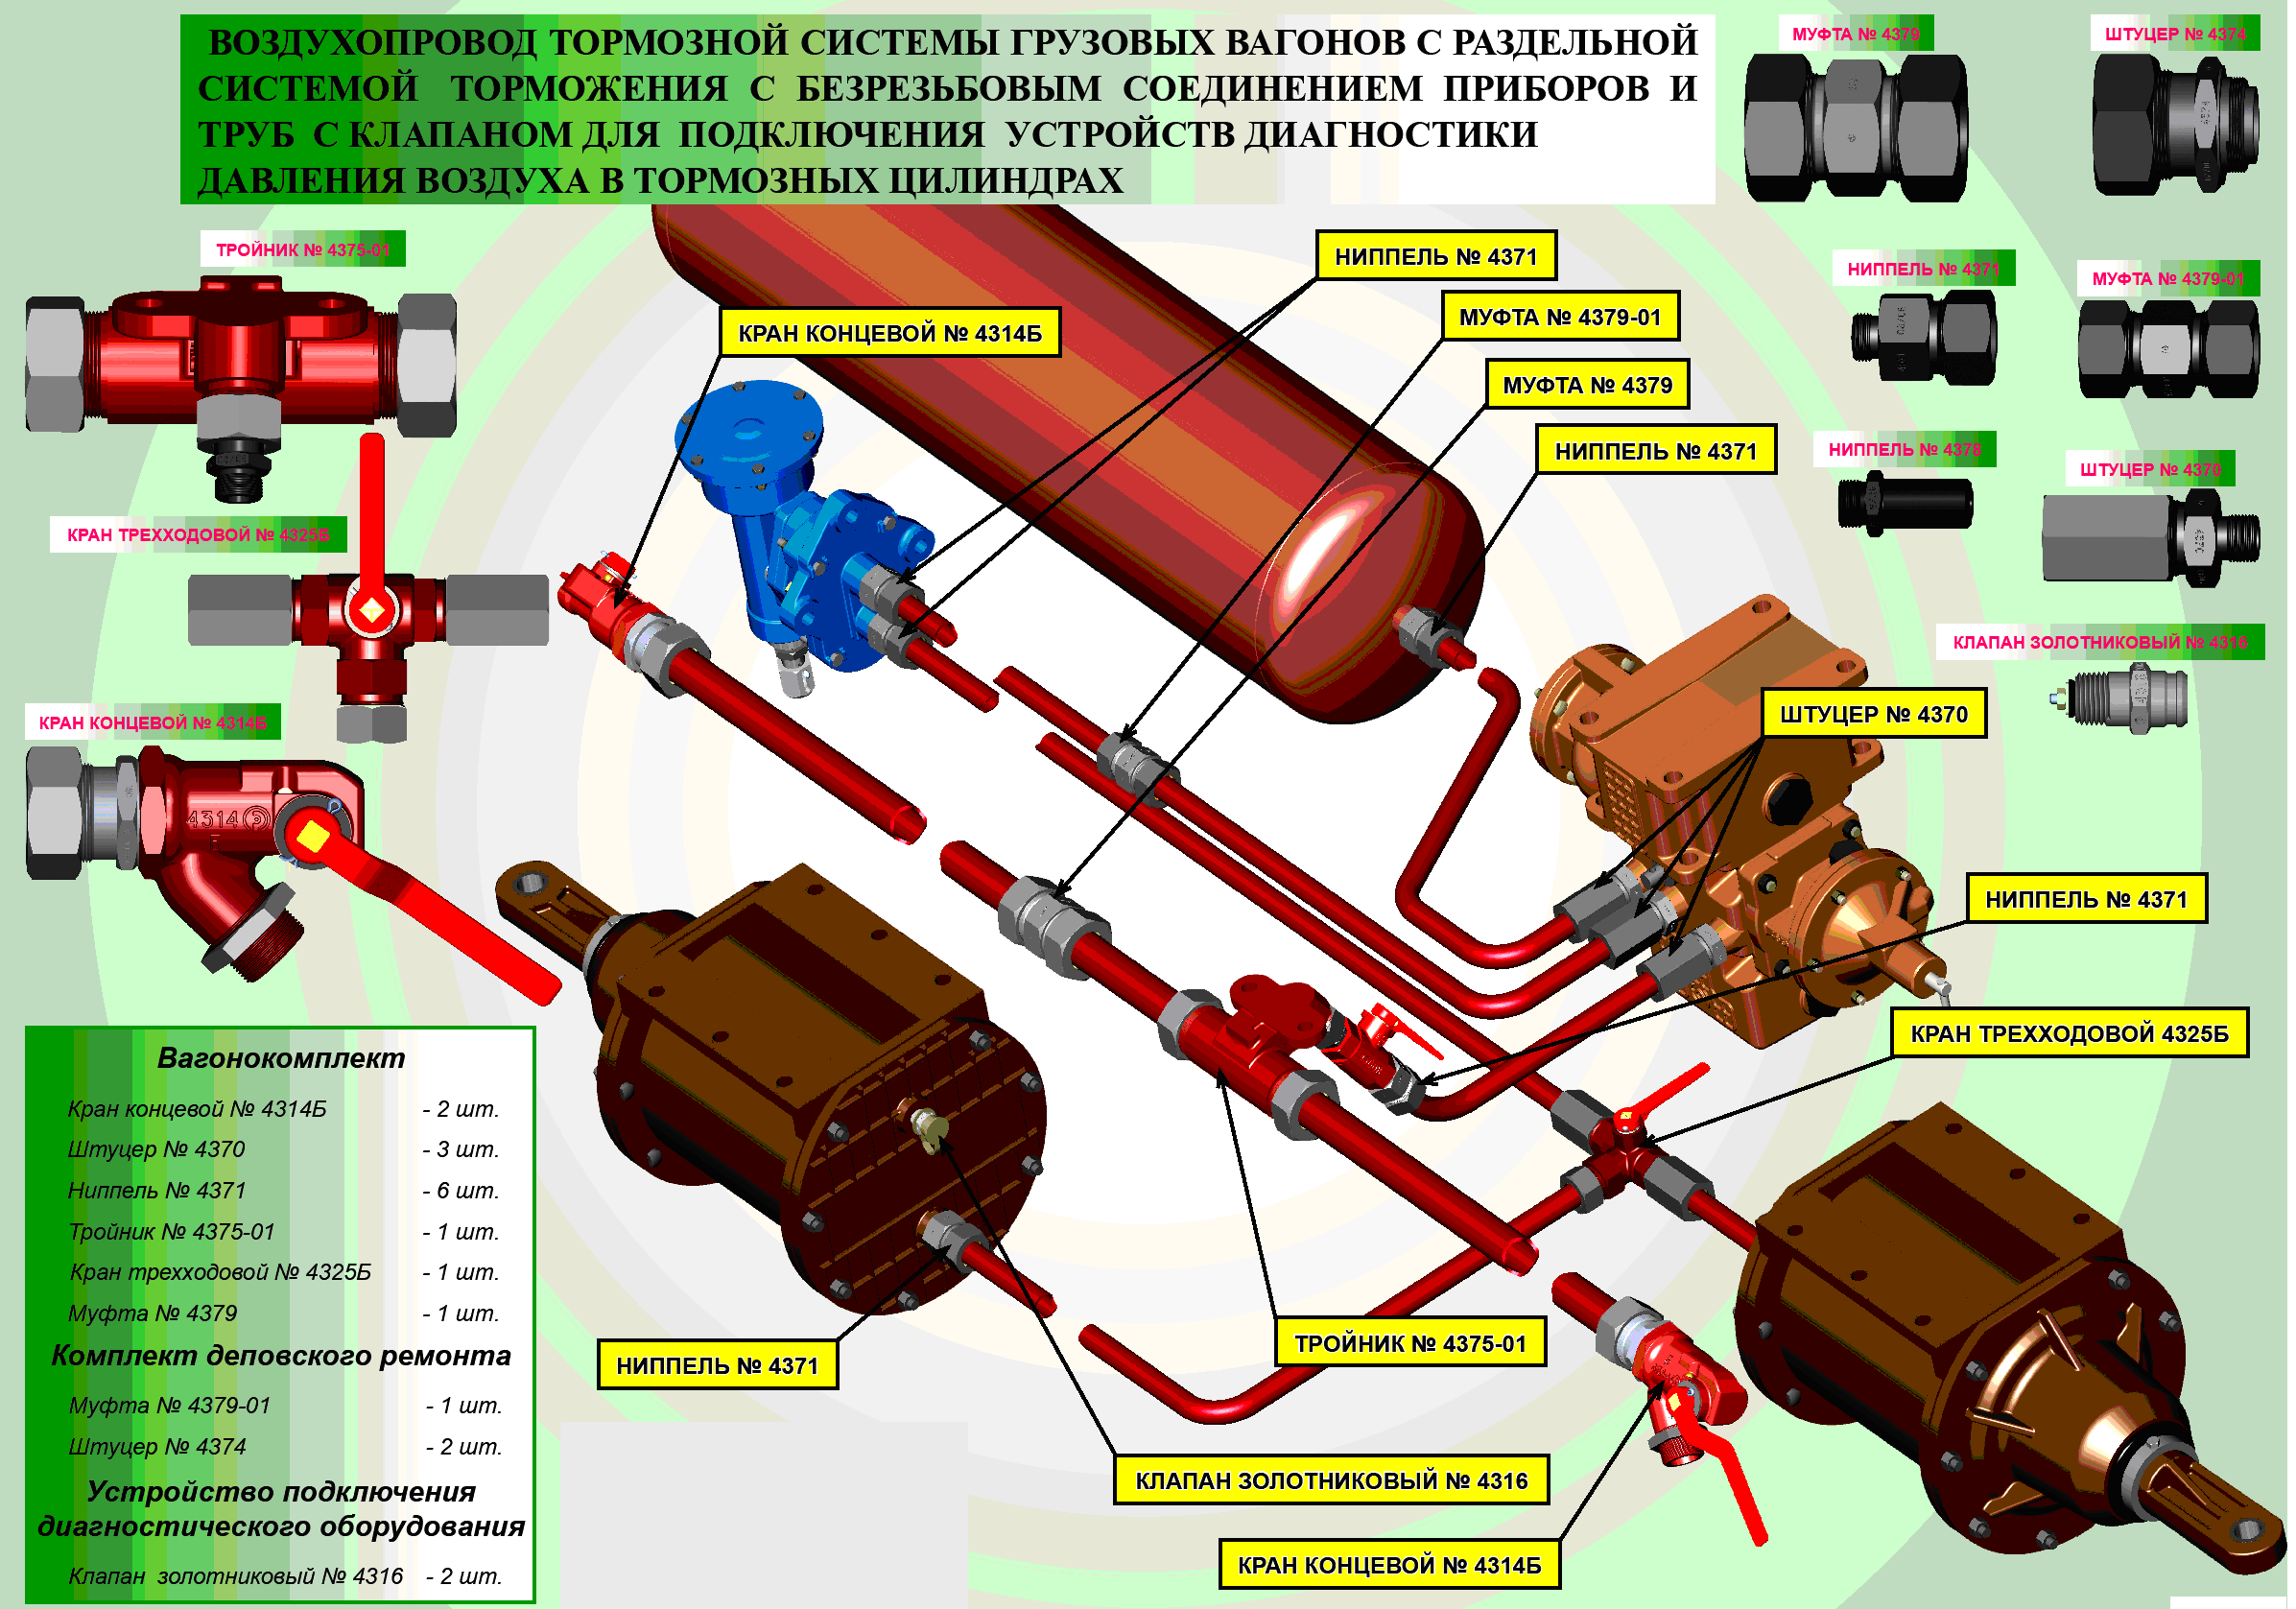 Тормозная система грузового вагона